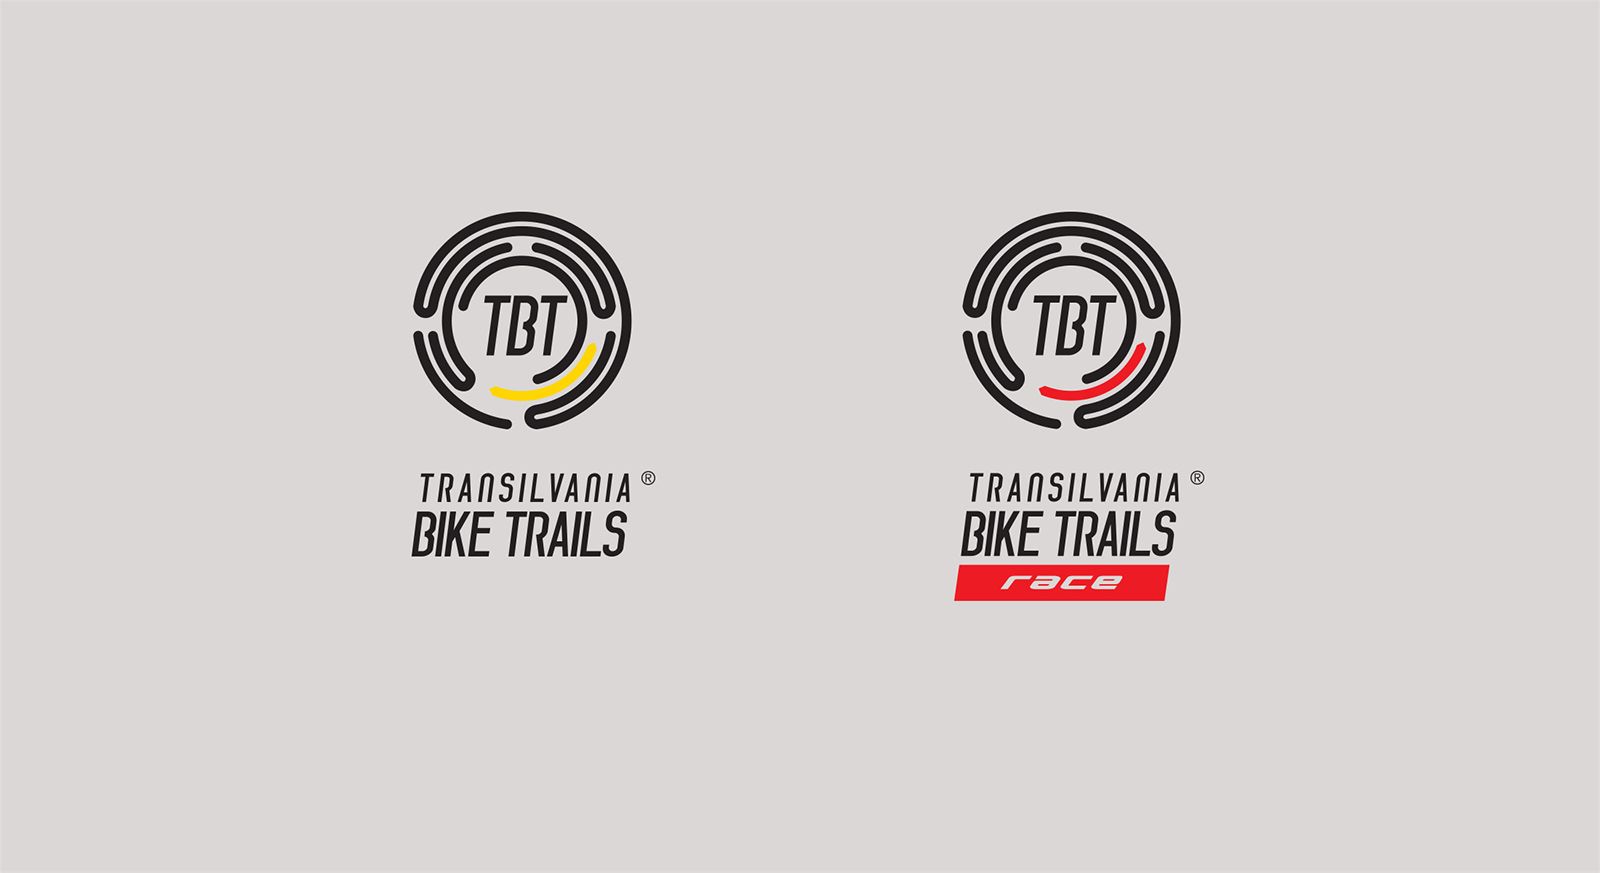 Tansilvania Bike Trails